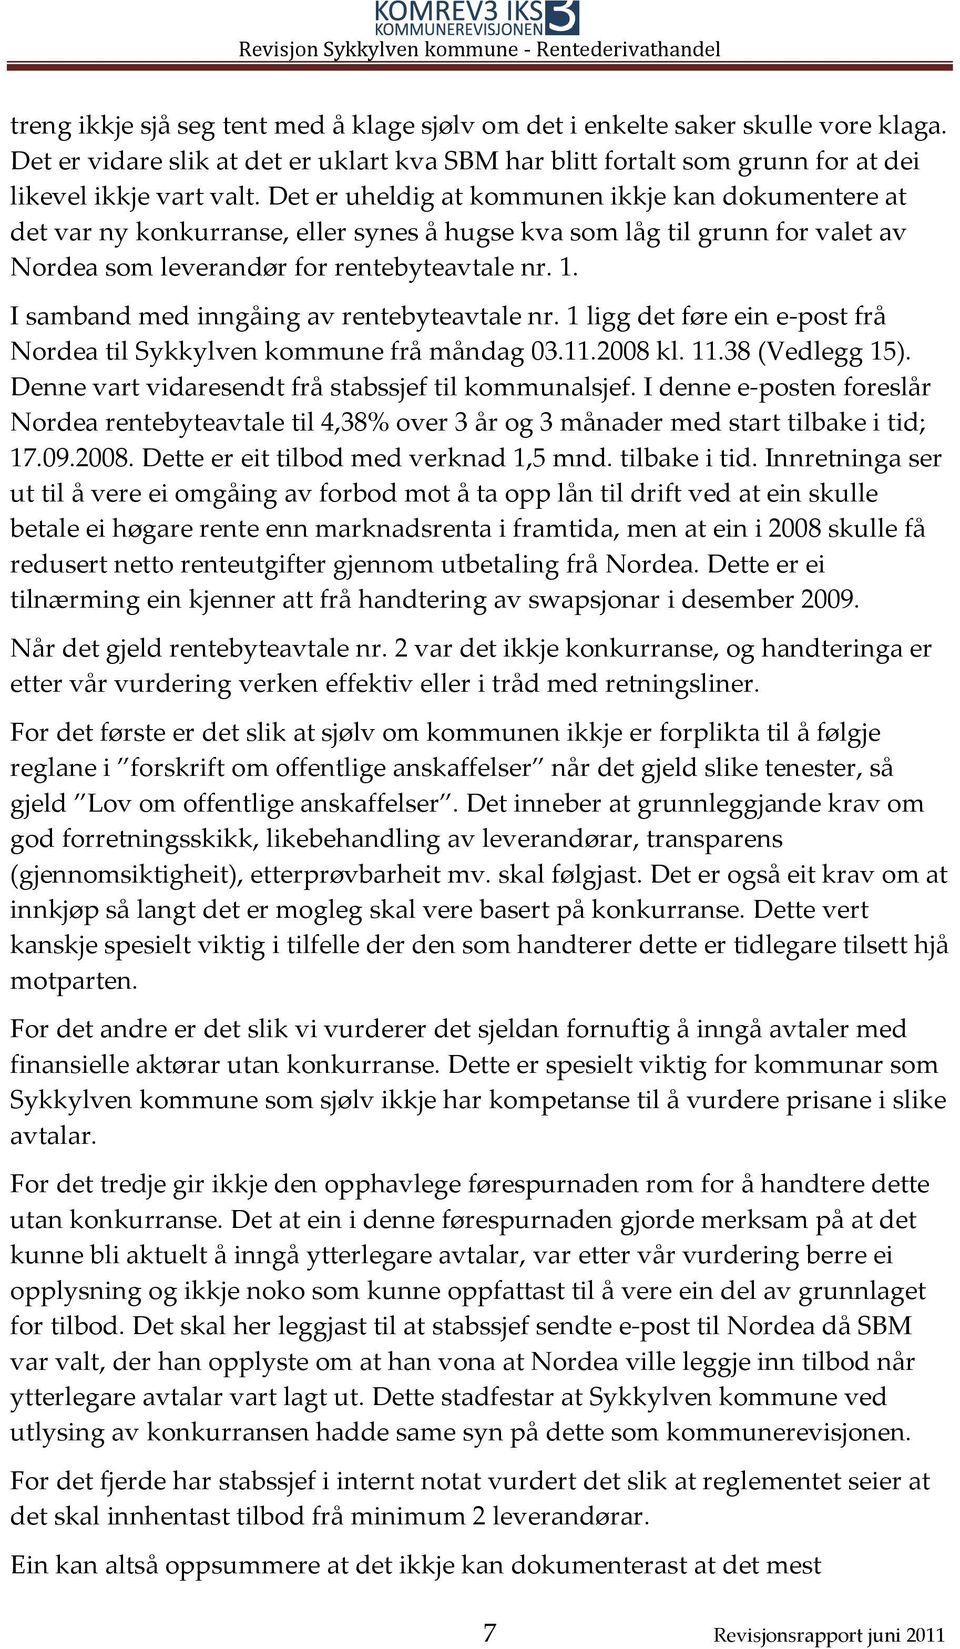 I samband med inngåing av rentebyteavtale nr. 1 ligg det føre ein e-post frå Nordea til Sykkylven kommune frå måndag 03.11.2008 kl. 11.38 (Vedlegg 15).